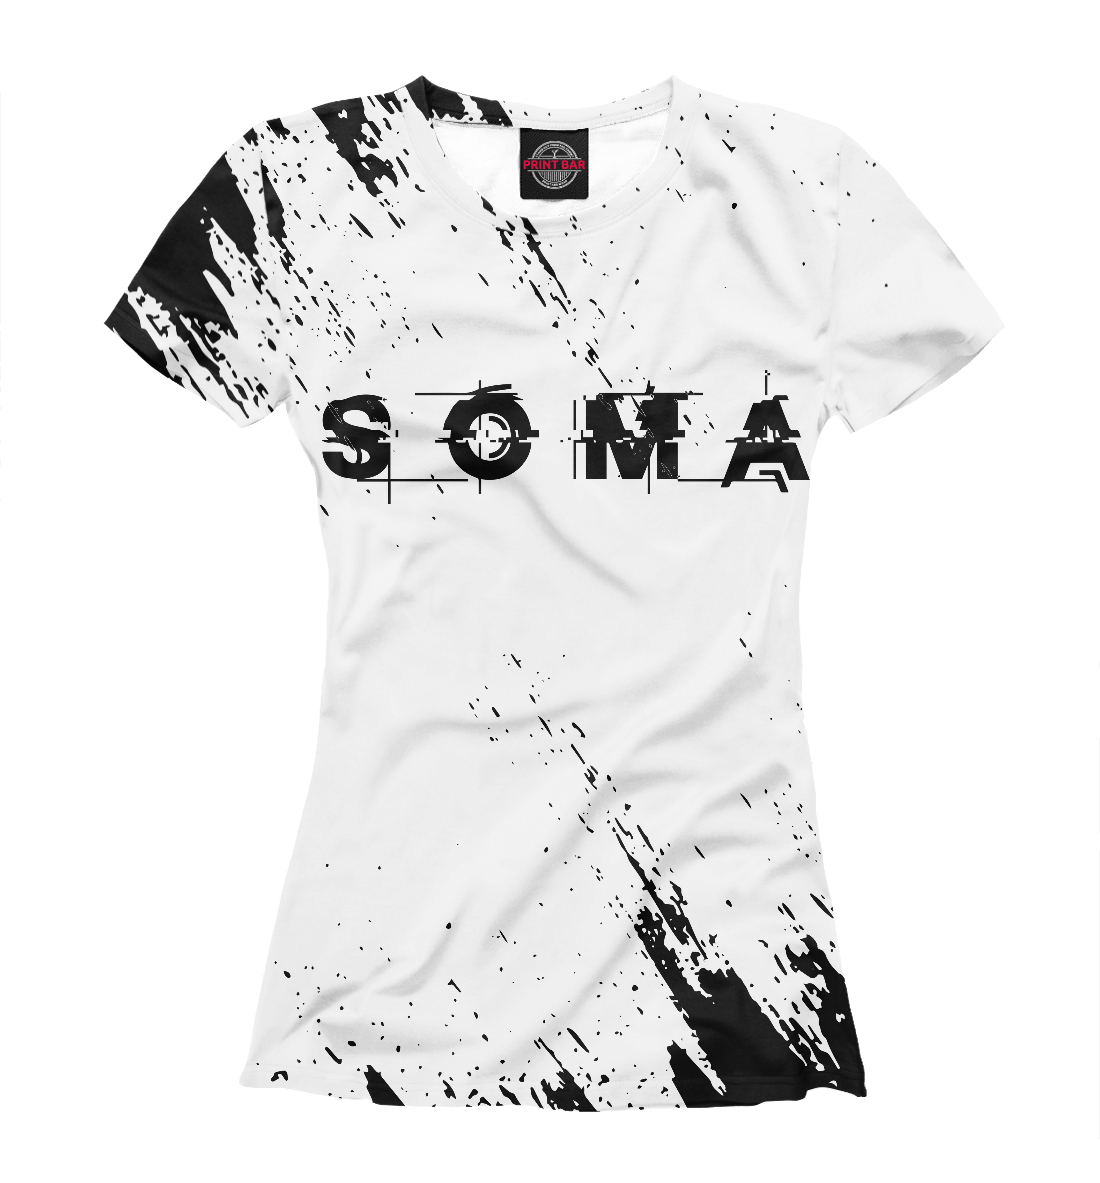 

Soma